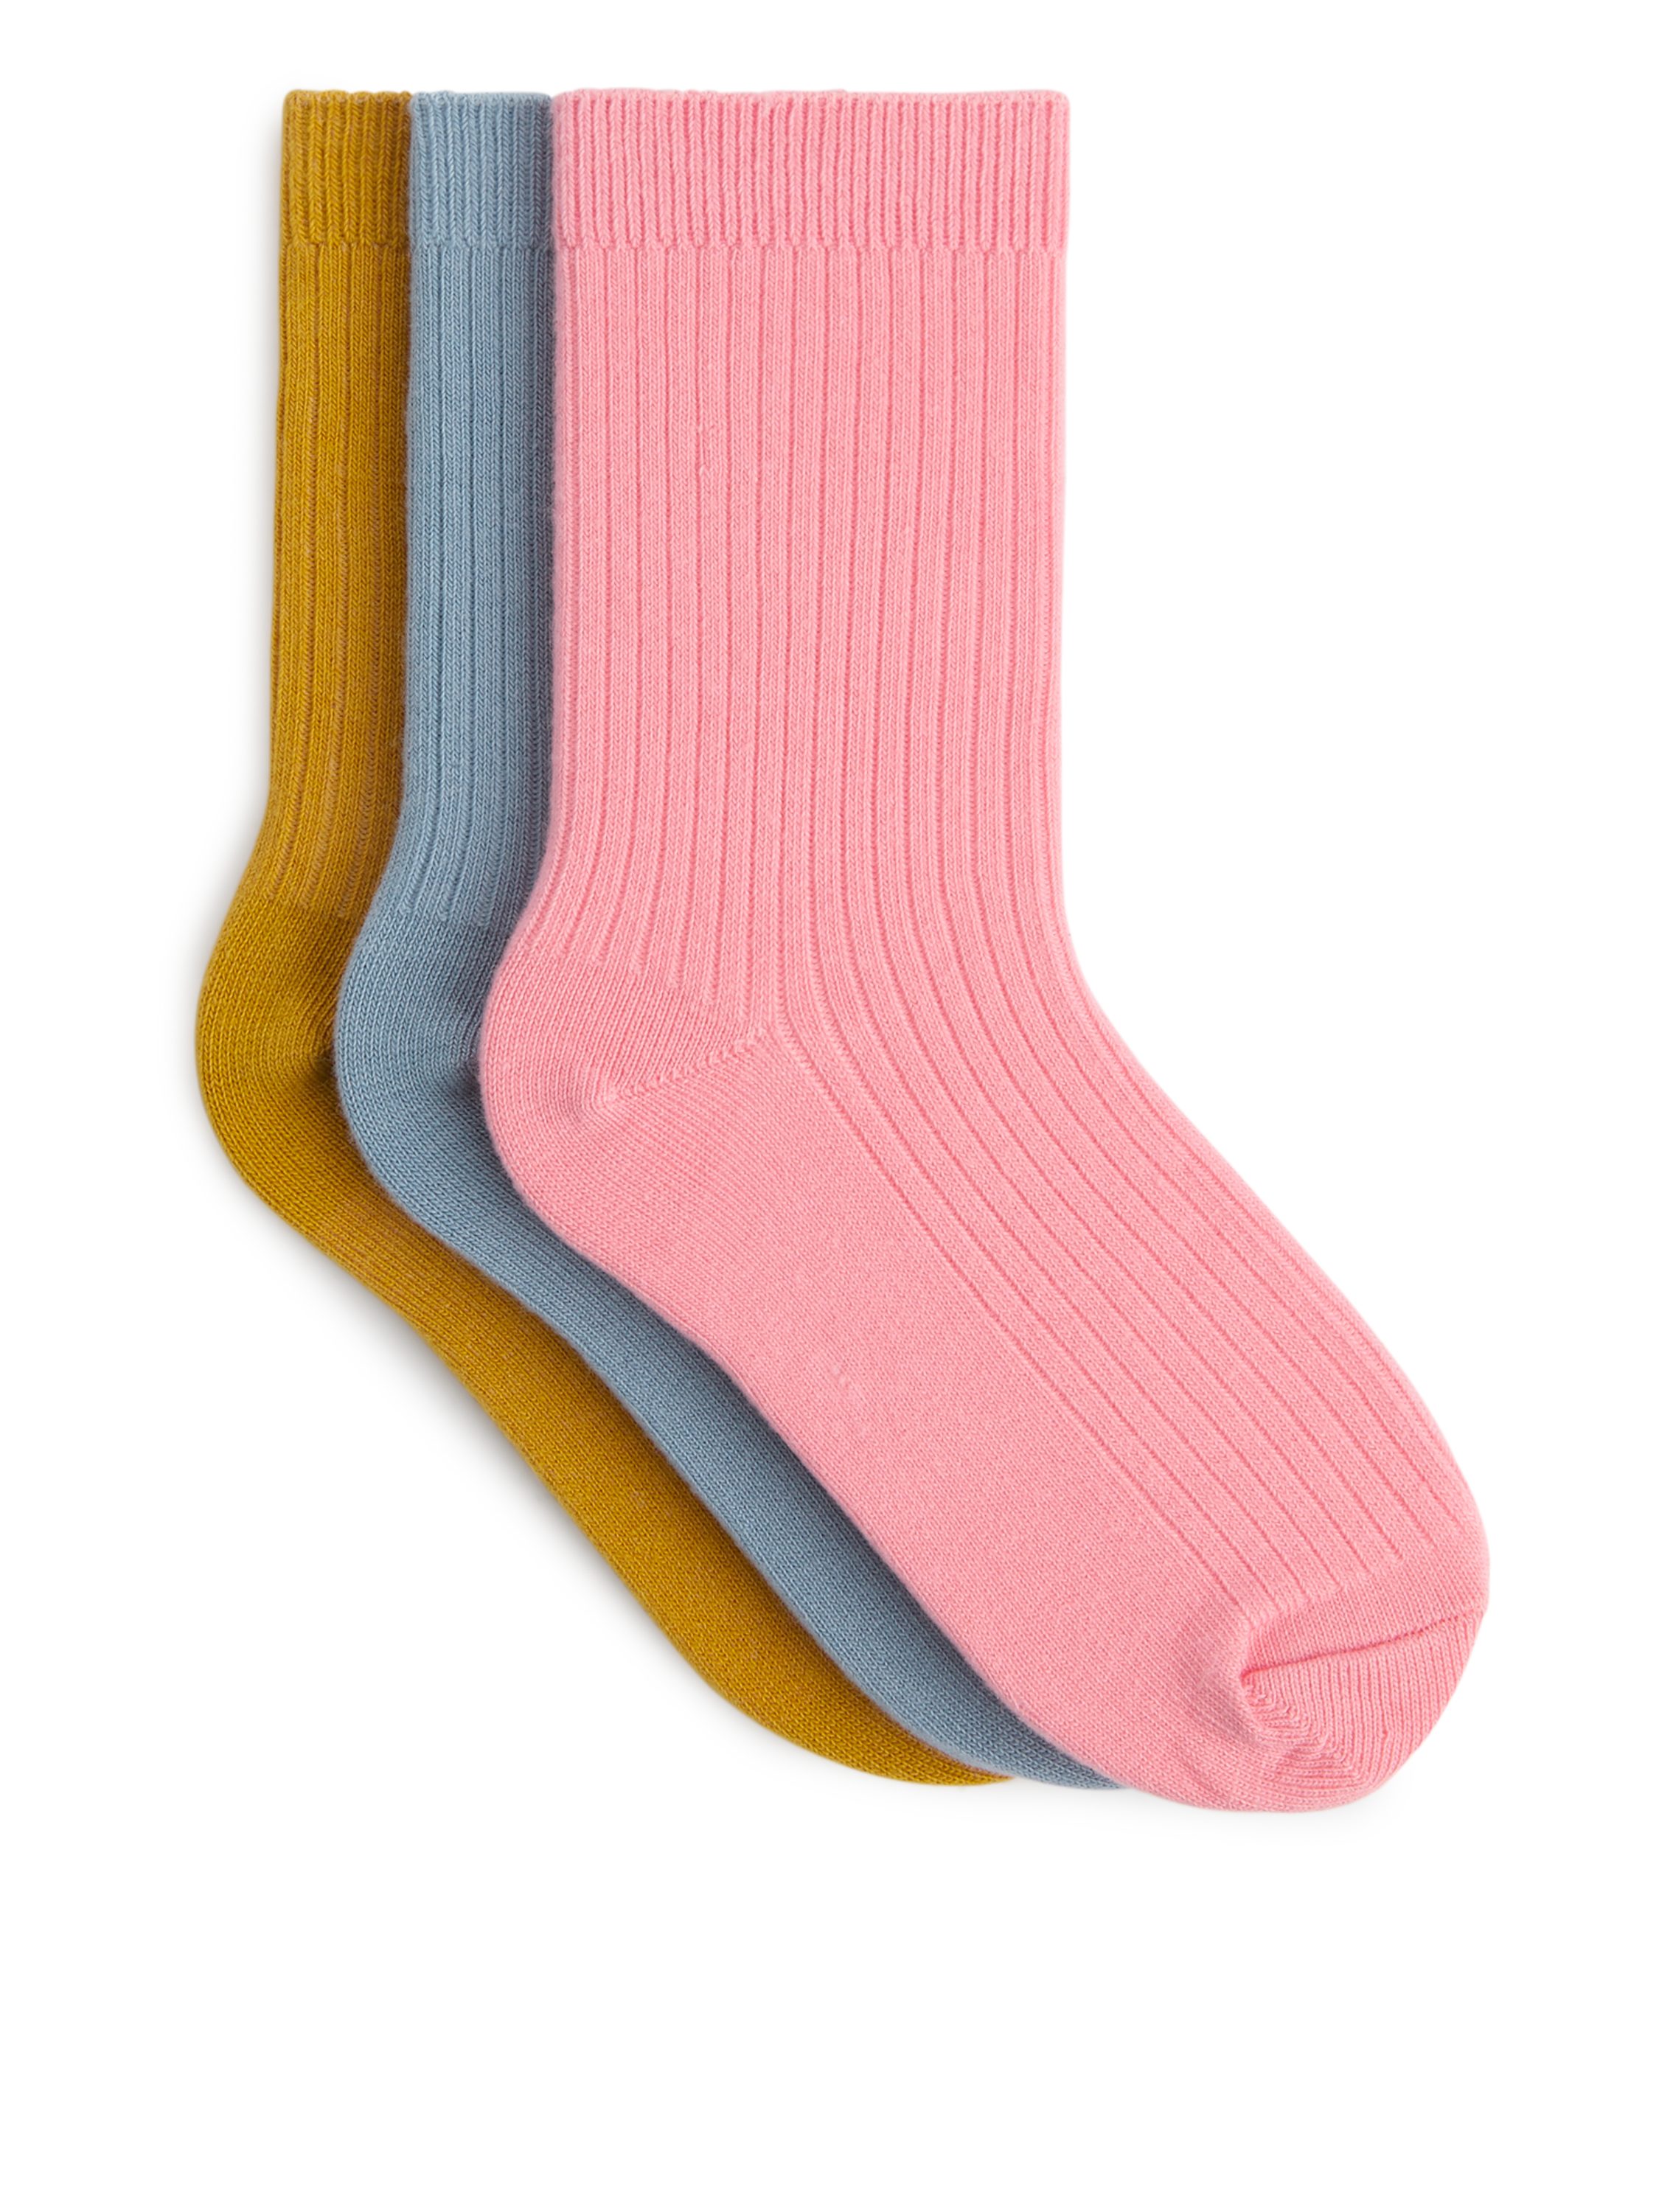 Billede af Arket Ribstrikkede Strømper, 3 Par, Strømpebukser. Farve: Pink/mustard/blue I størrelse 22/24